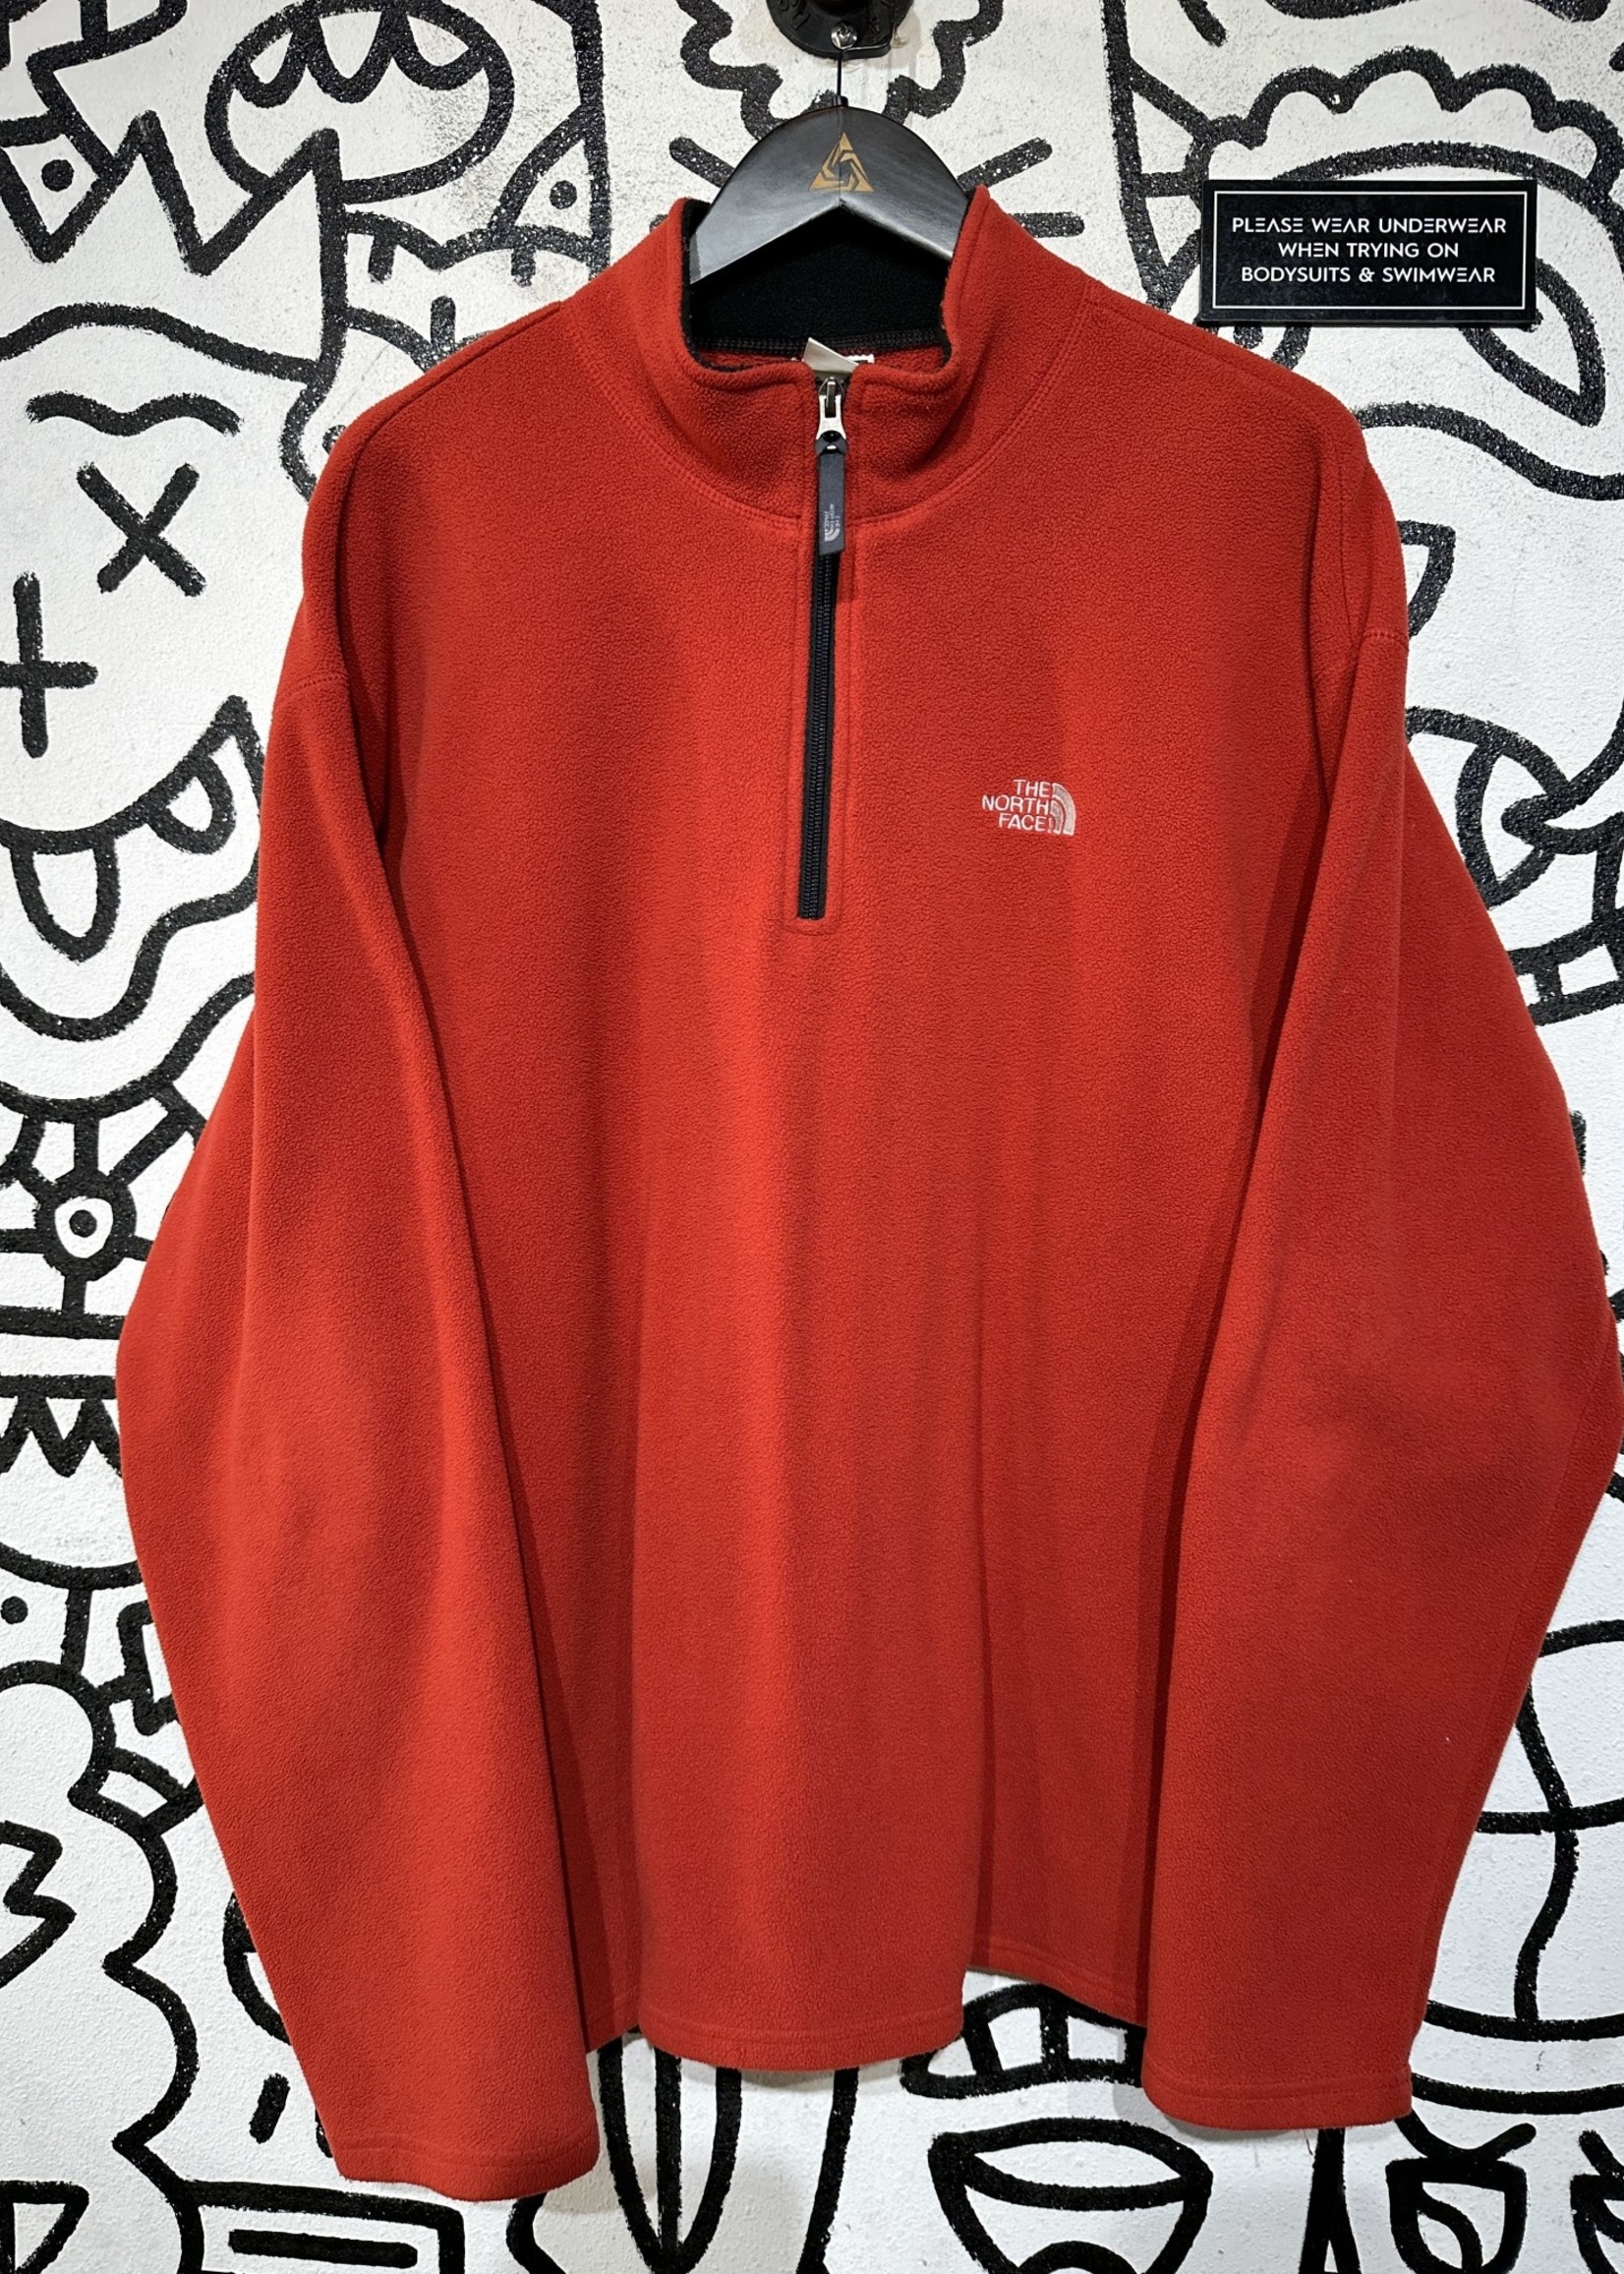 North Face Orange/Red 1/4 Zip Fleece Jacket XL